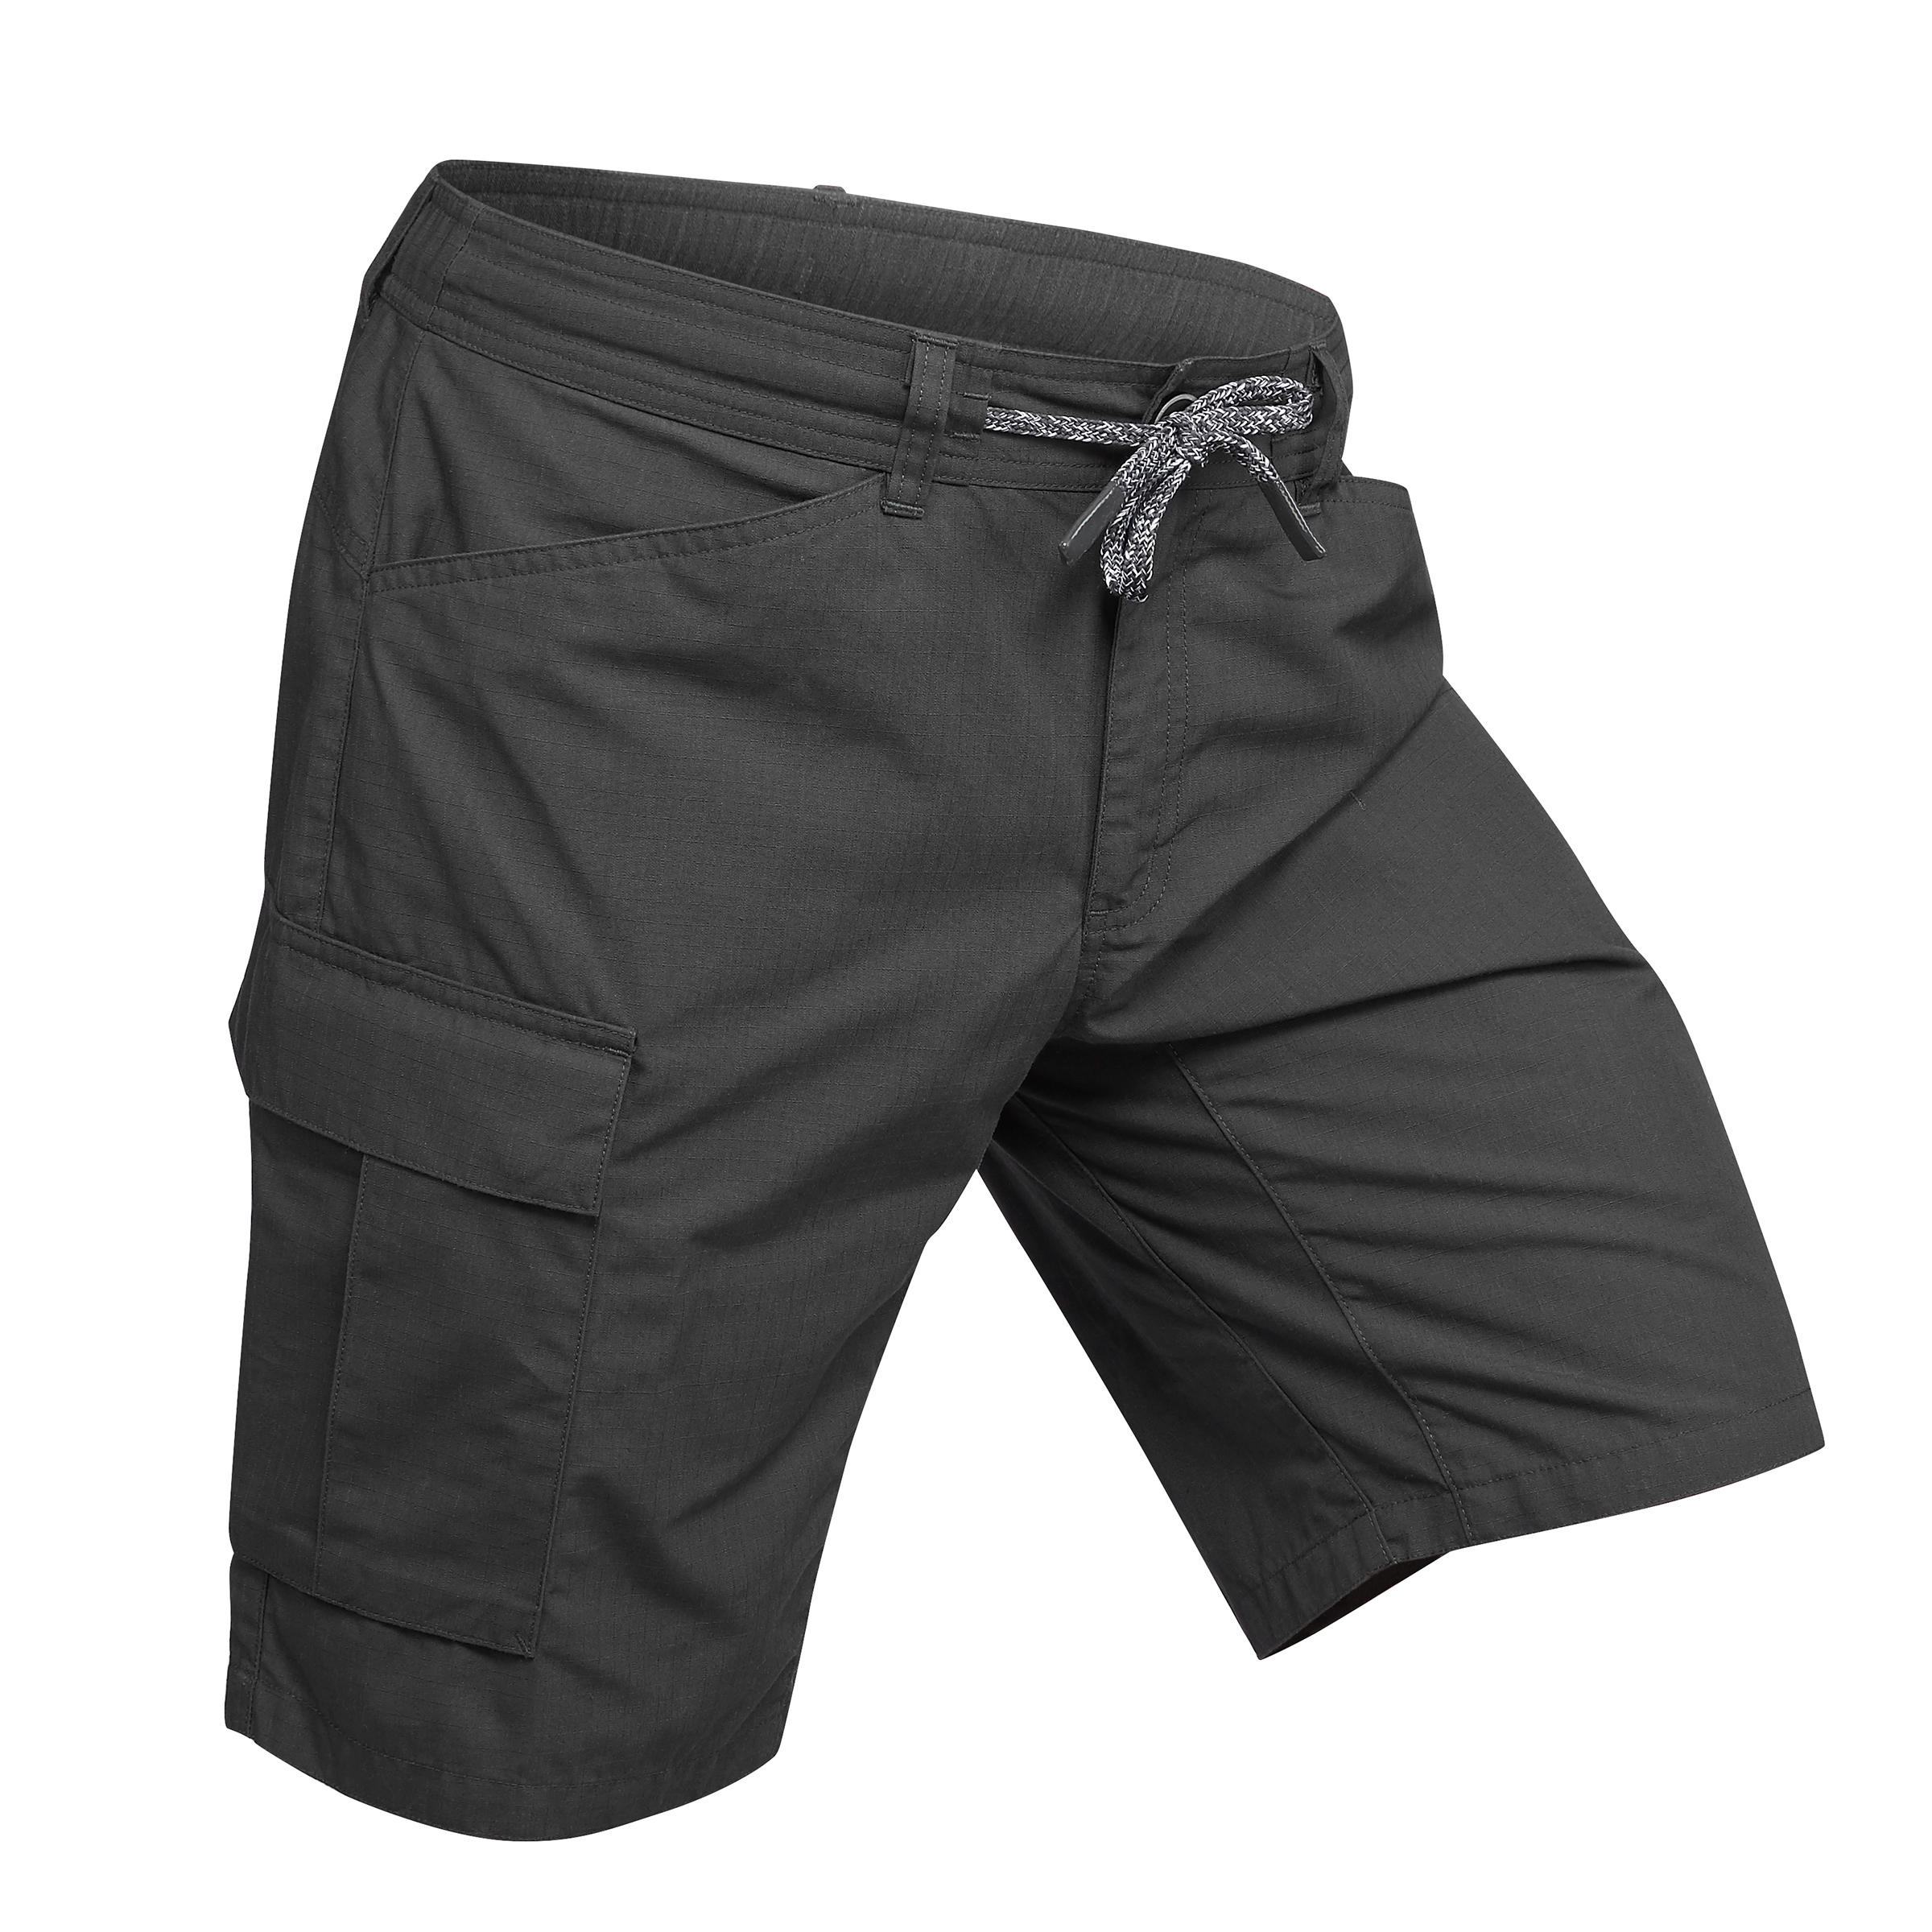 decathlon mens shorts